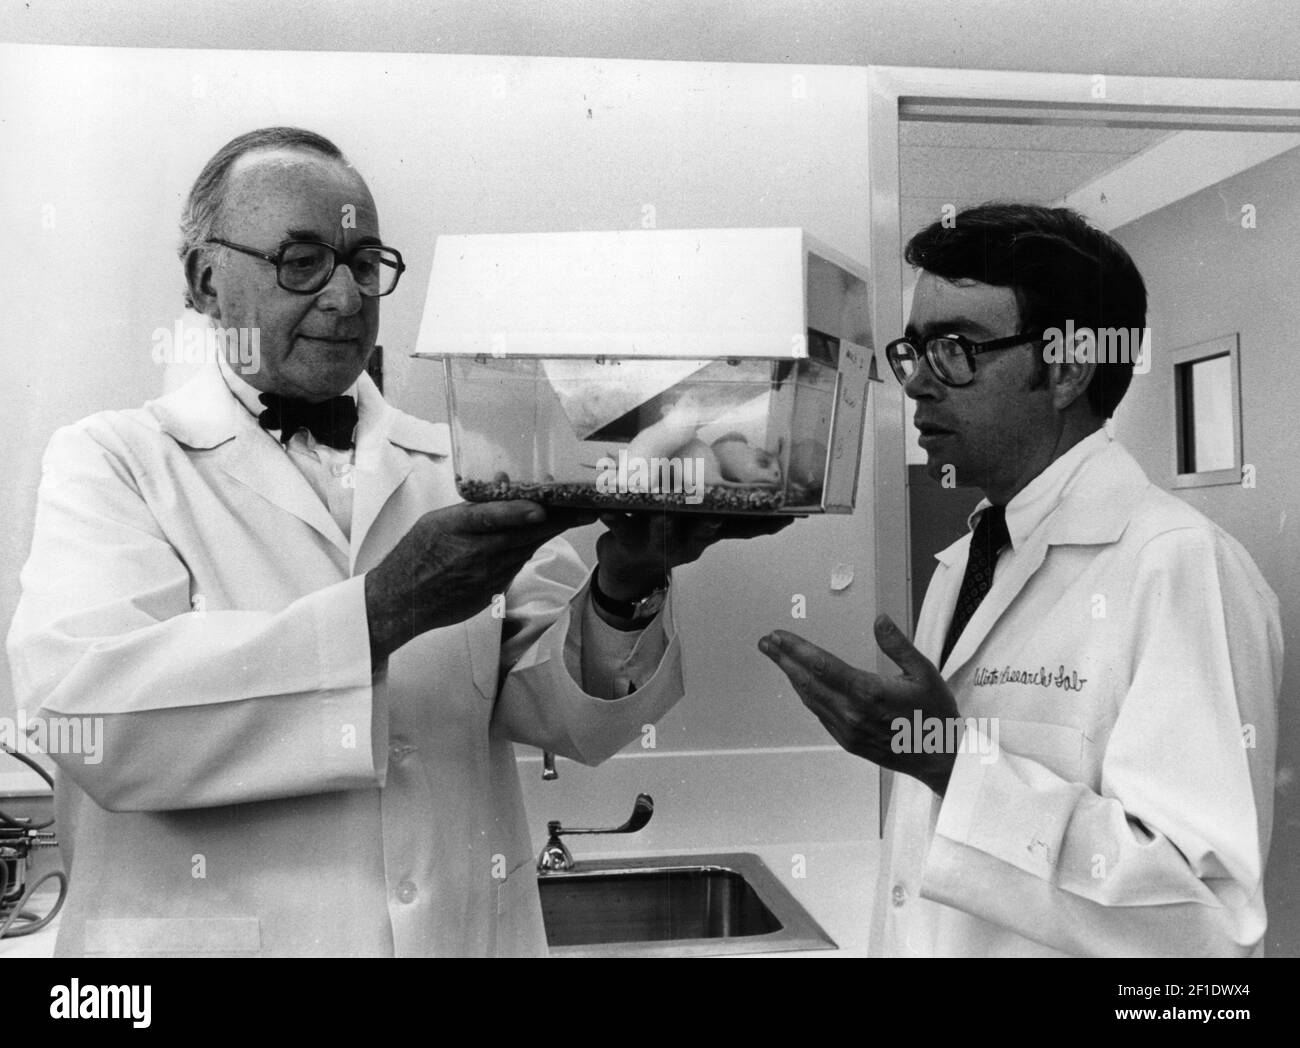 18 de julio de 1980; Milwaukee, WI, EE.UU.; Un abrigo de laboratorio era el uniforme para Frederick P. Stratton Jr. (Derecha), presidente de Briggs & Stratton Corp., mientras él confirió con Mortimer M. Bortin, un médico que dirige el Laboratorio de Investigación de Invierno del Centro médico Mount Sinai. Stratton anunció que Briggs & Stratton apoyará un simposio internacional sobre el cáncer organizado por Bortin. El evento de 1980 se llevará a cabo el 8-11 de octubre en Wingspread, el centro de conferencias de la Fundación Johnson en Racine. Stratton dijo que la subvención de su corporación de $35.000 cubrirá los gastos de viaje de los participantes, pu Foto de stock